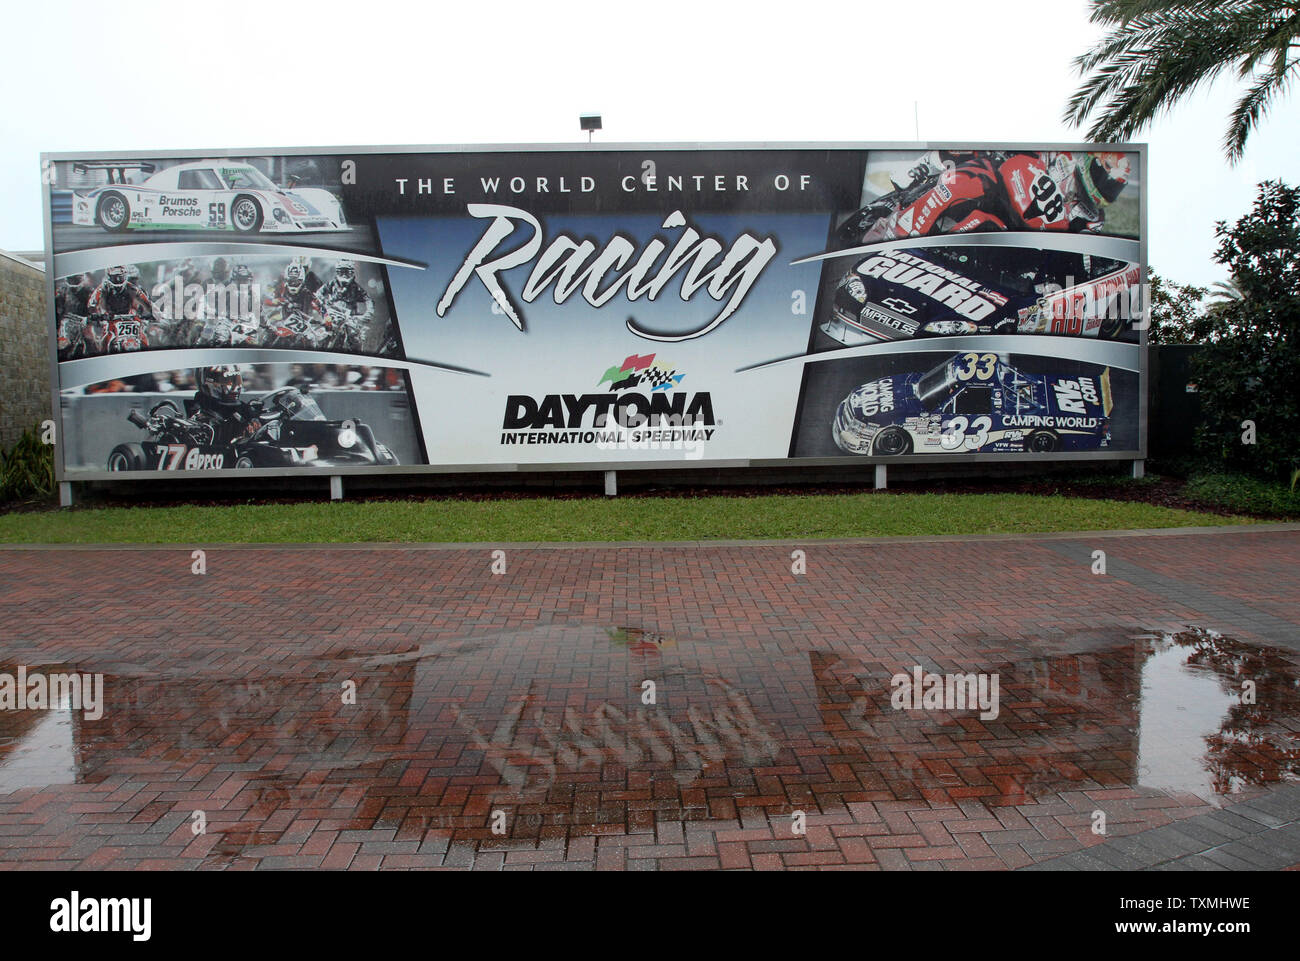 Le Daytona 500 heure de départ a été fixé au 7:00h à 12:00 pm un début parce que la pluie continue à Daytona International Speedway de Daytona Beach, Floride le 26 février 2012. UPI/Michael Bush Banque D'Images